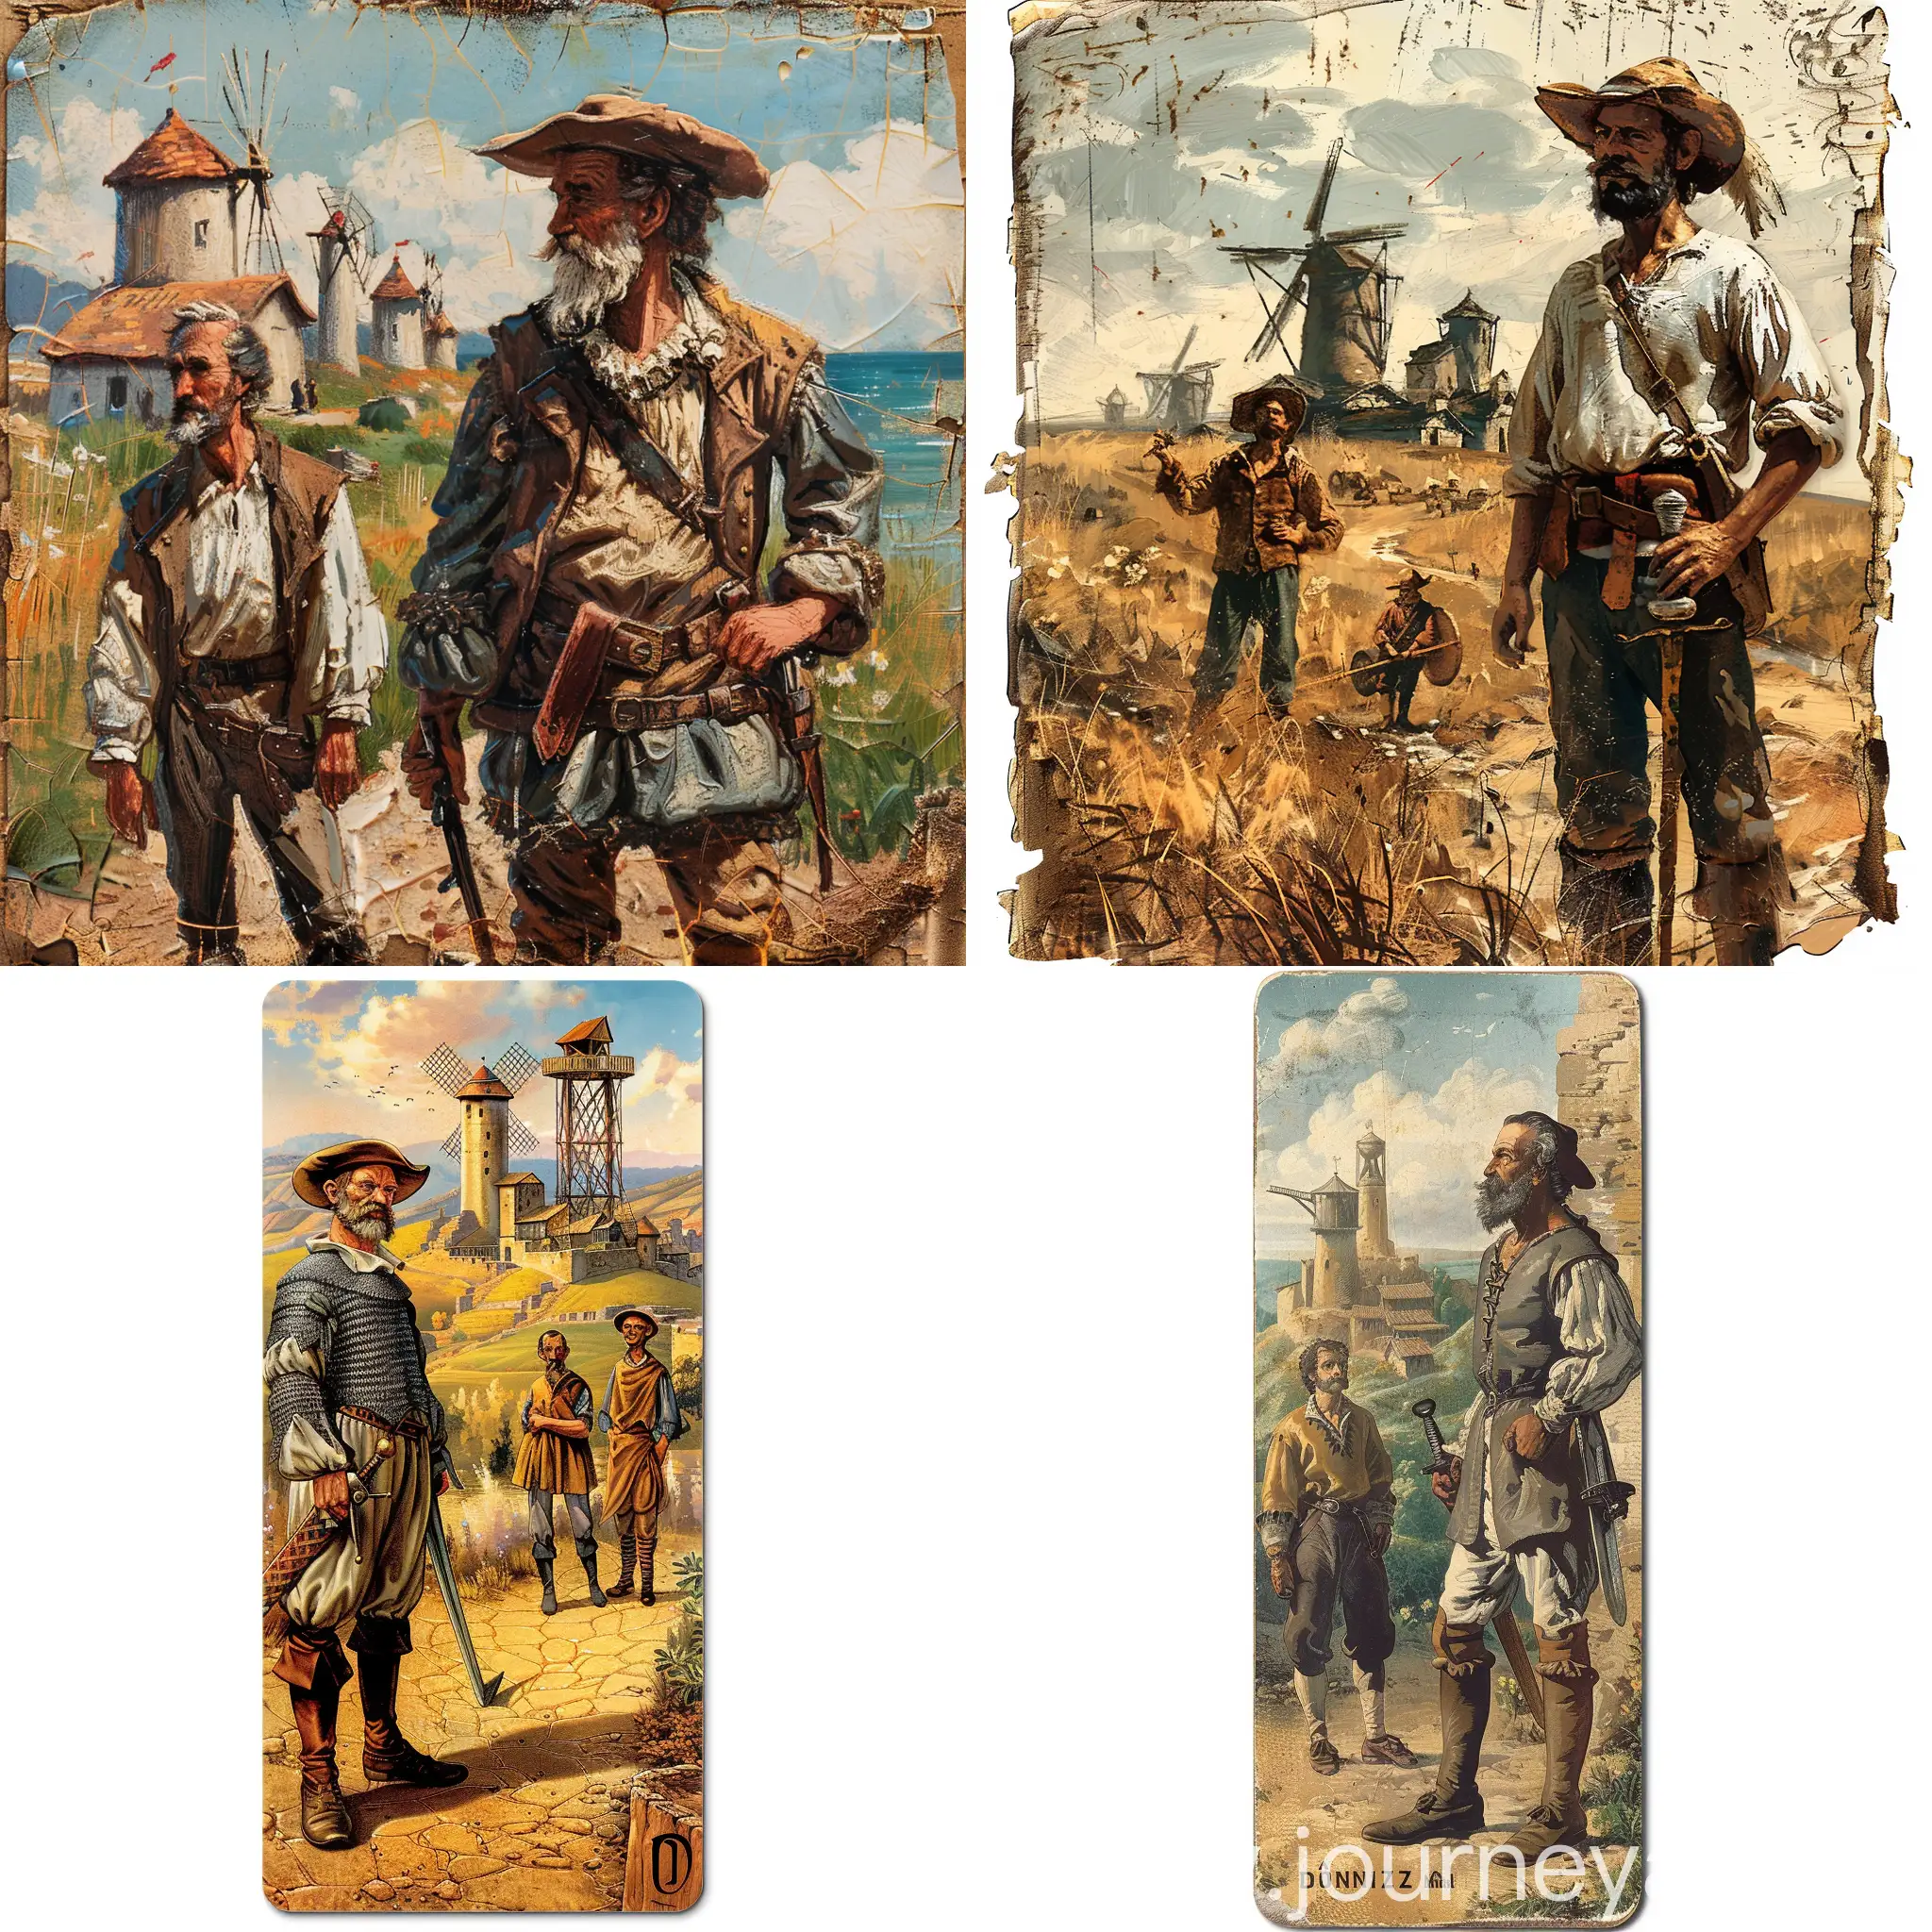 Don-Quixote-and-Sancho-Panza-Facing-Windmills-Vertical-Bookmark-Image